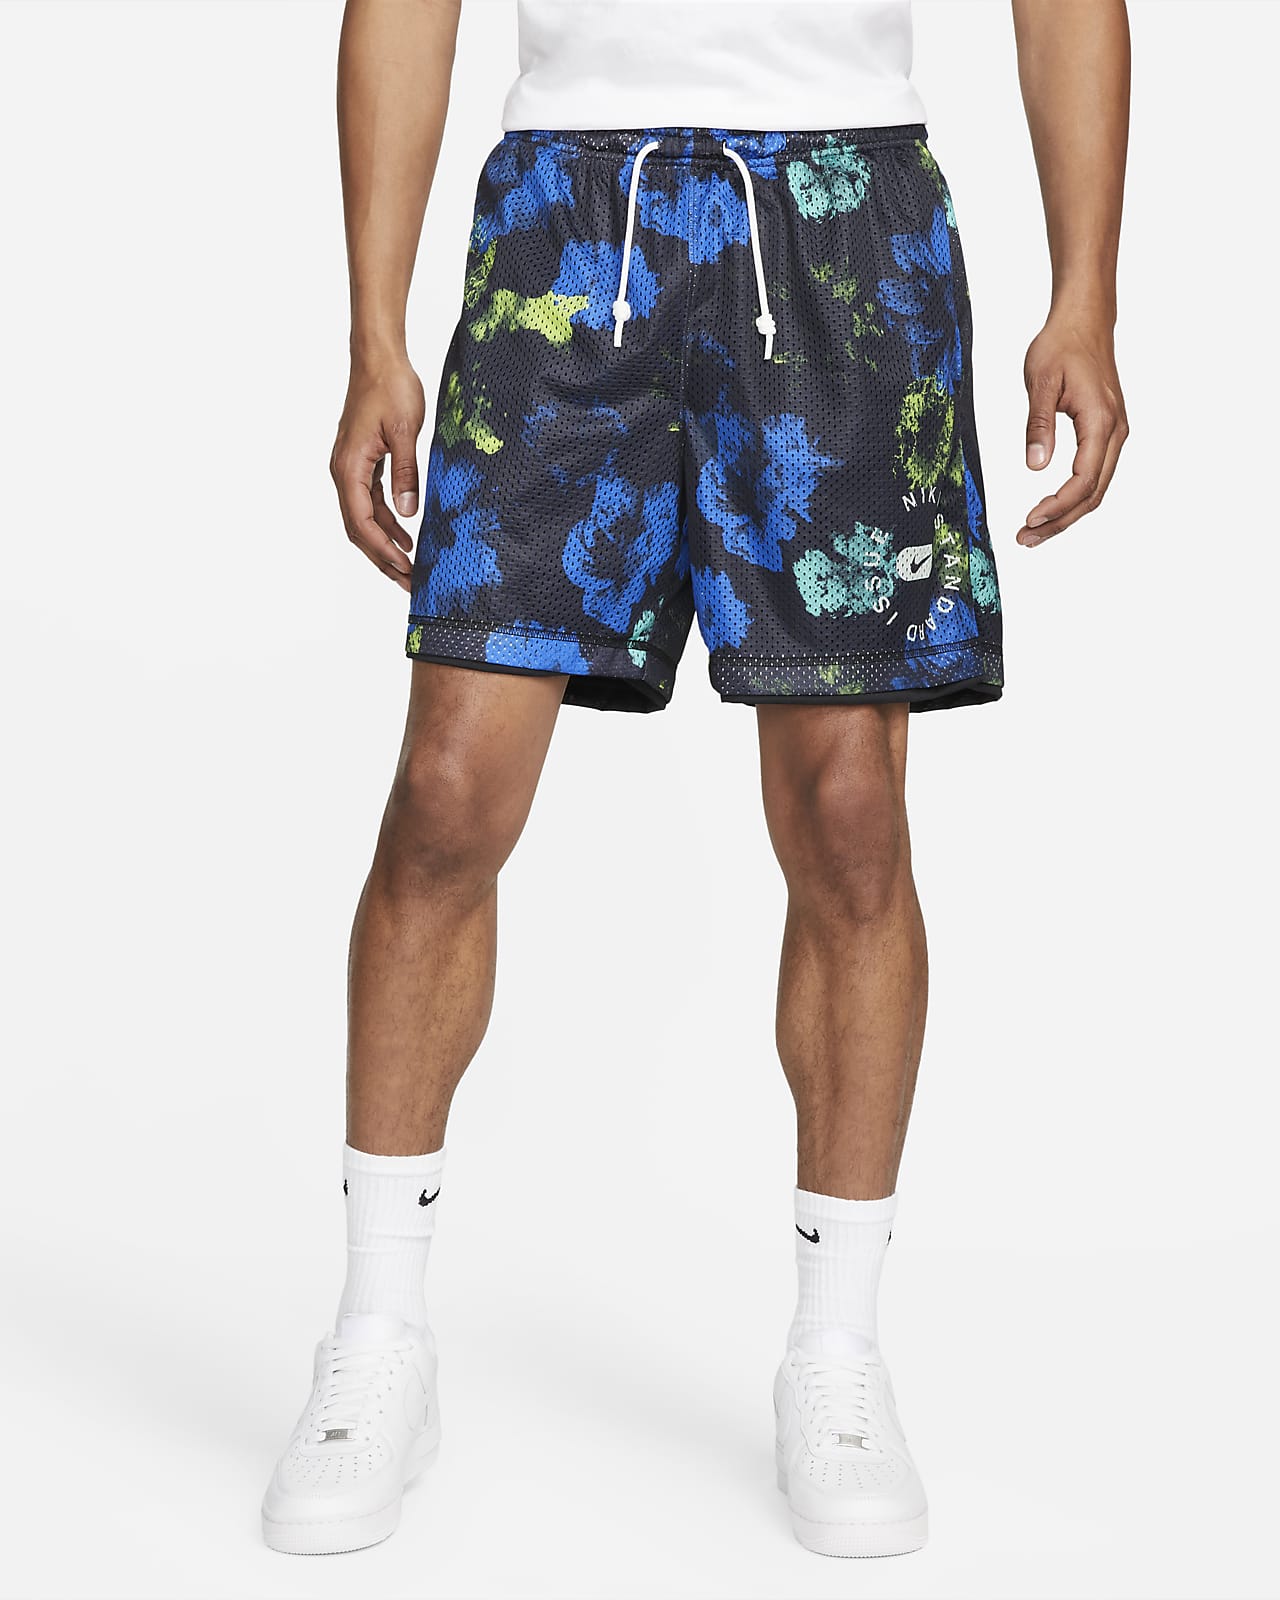 Nike Standard Issue Men's Basketball Reversible Shorts